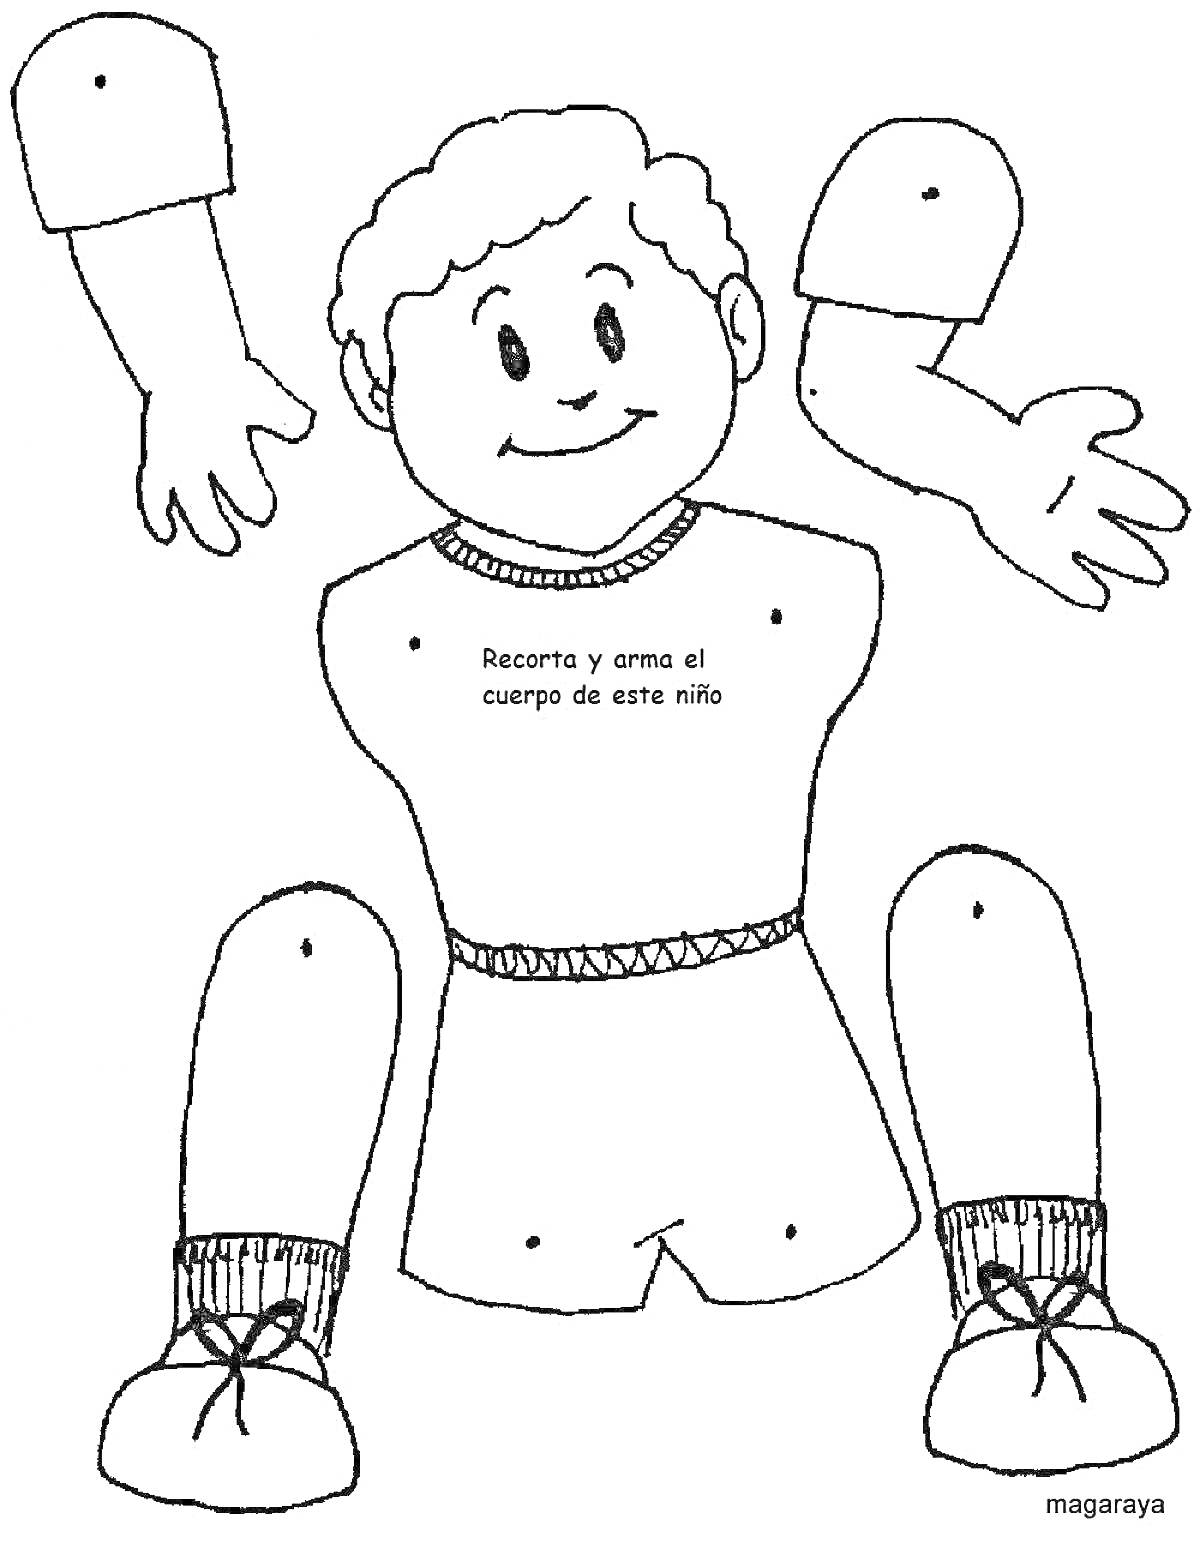 Раскраска Раскраска с изображением частей тела ребёнка (голова, туловище, руки, ноги), для вырезания и сборки